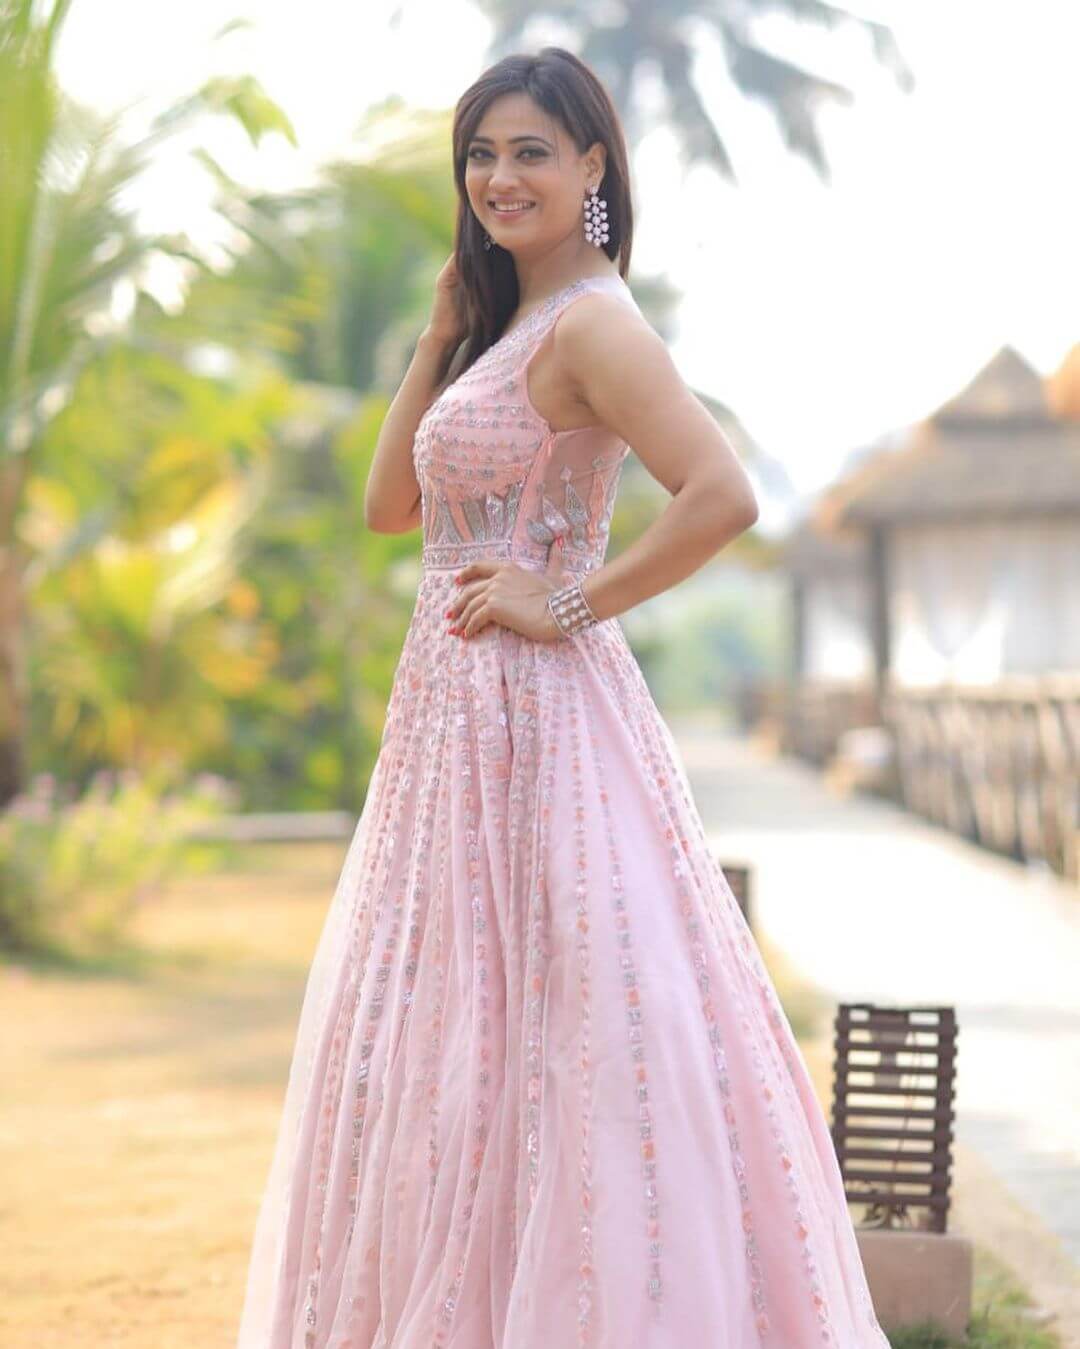 Shweta Tiwari in light pink outfit